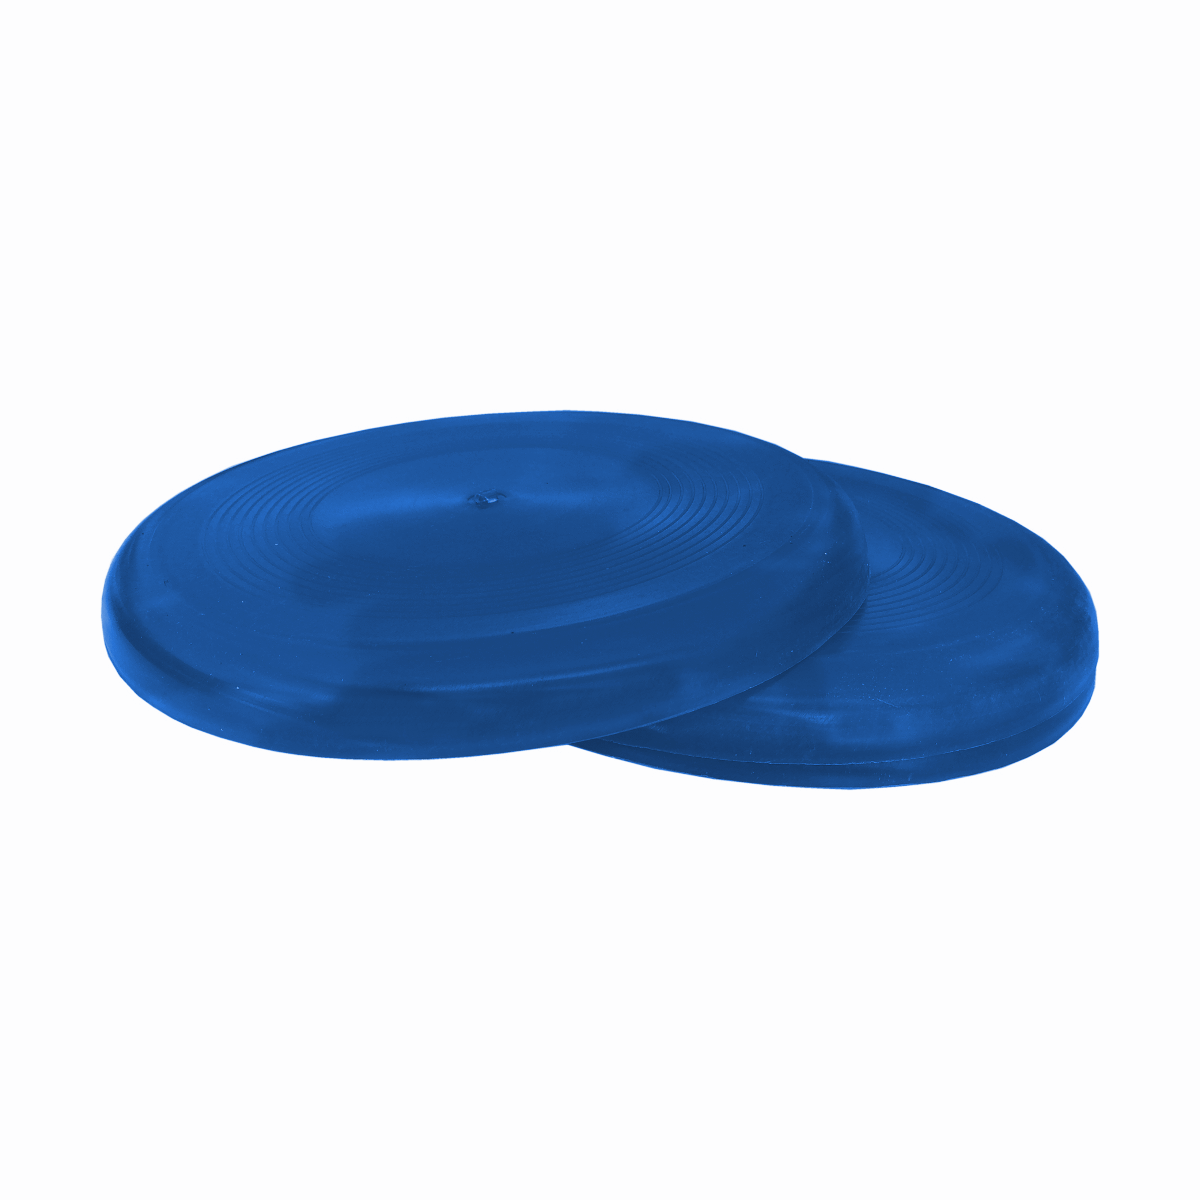 Köpek Eğitim Frizbi Oyuncak 22 cm  Mavi